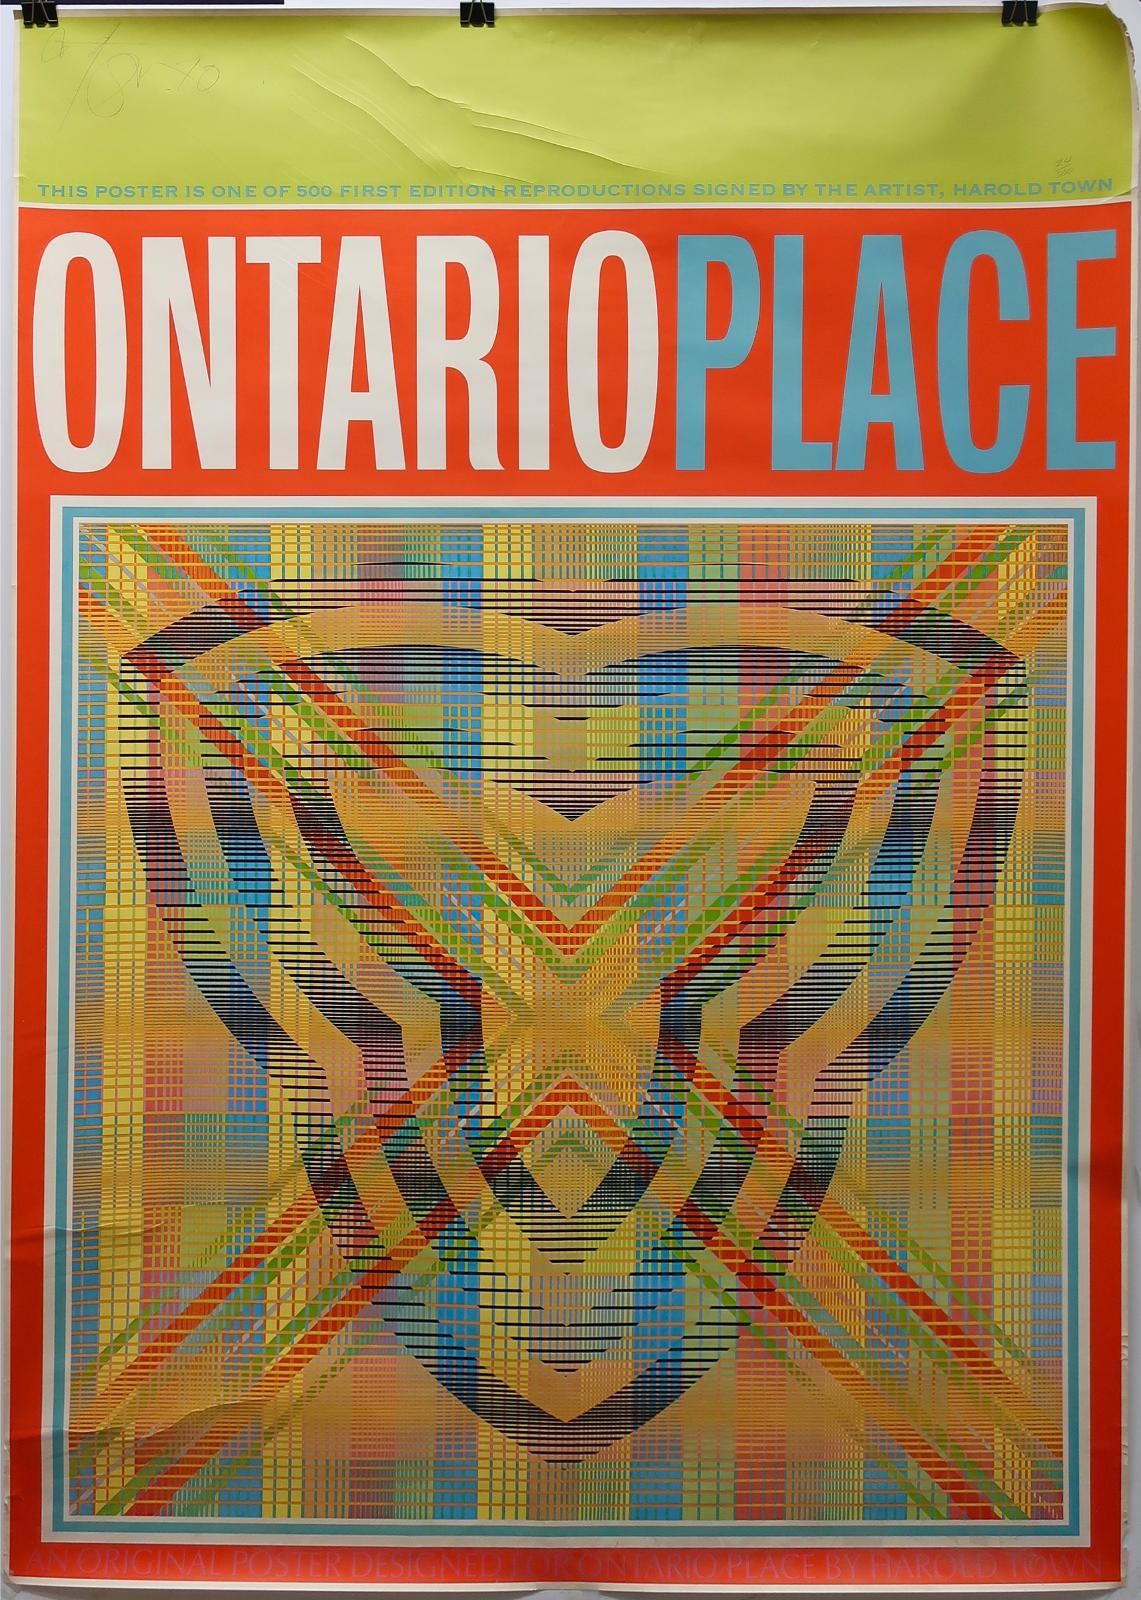 Harold Barling Town (1924-1990) - Ontario Place